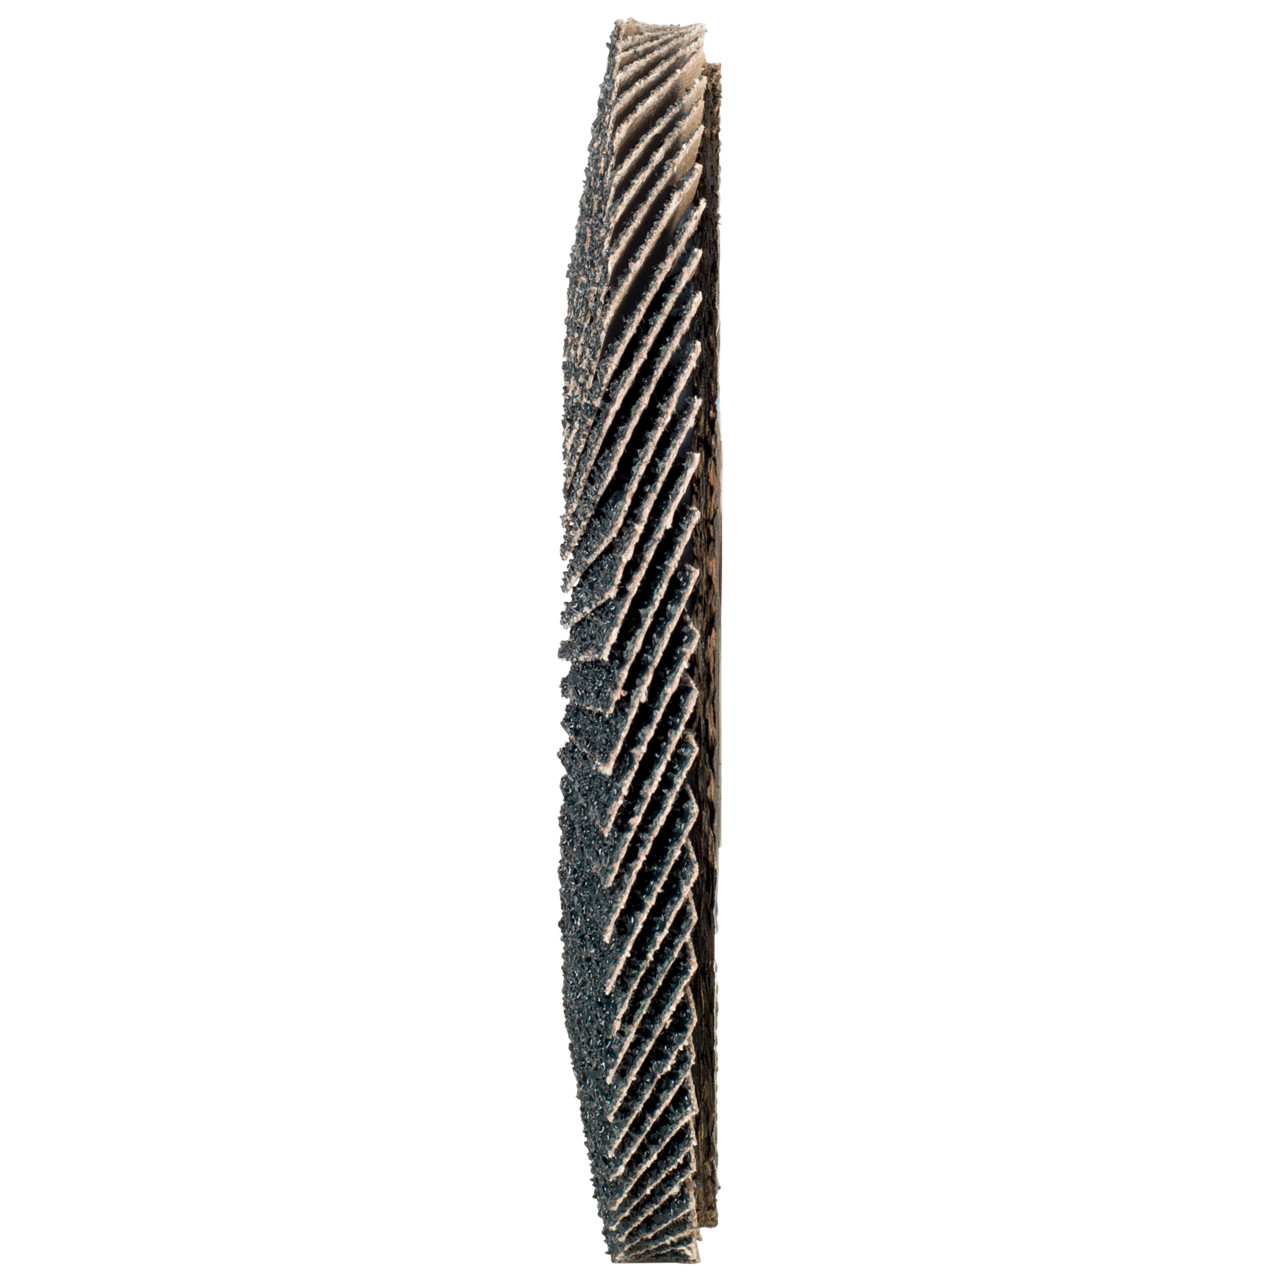 TYROLIT Fächerscheibe DxH 125x22,2 2in1 für Stahl & Edelstahl, P40, Form: 28A - gerade Ausführung (Glasfaserträgerkörperausführung), Art. 668692